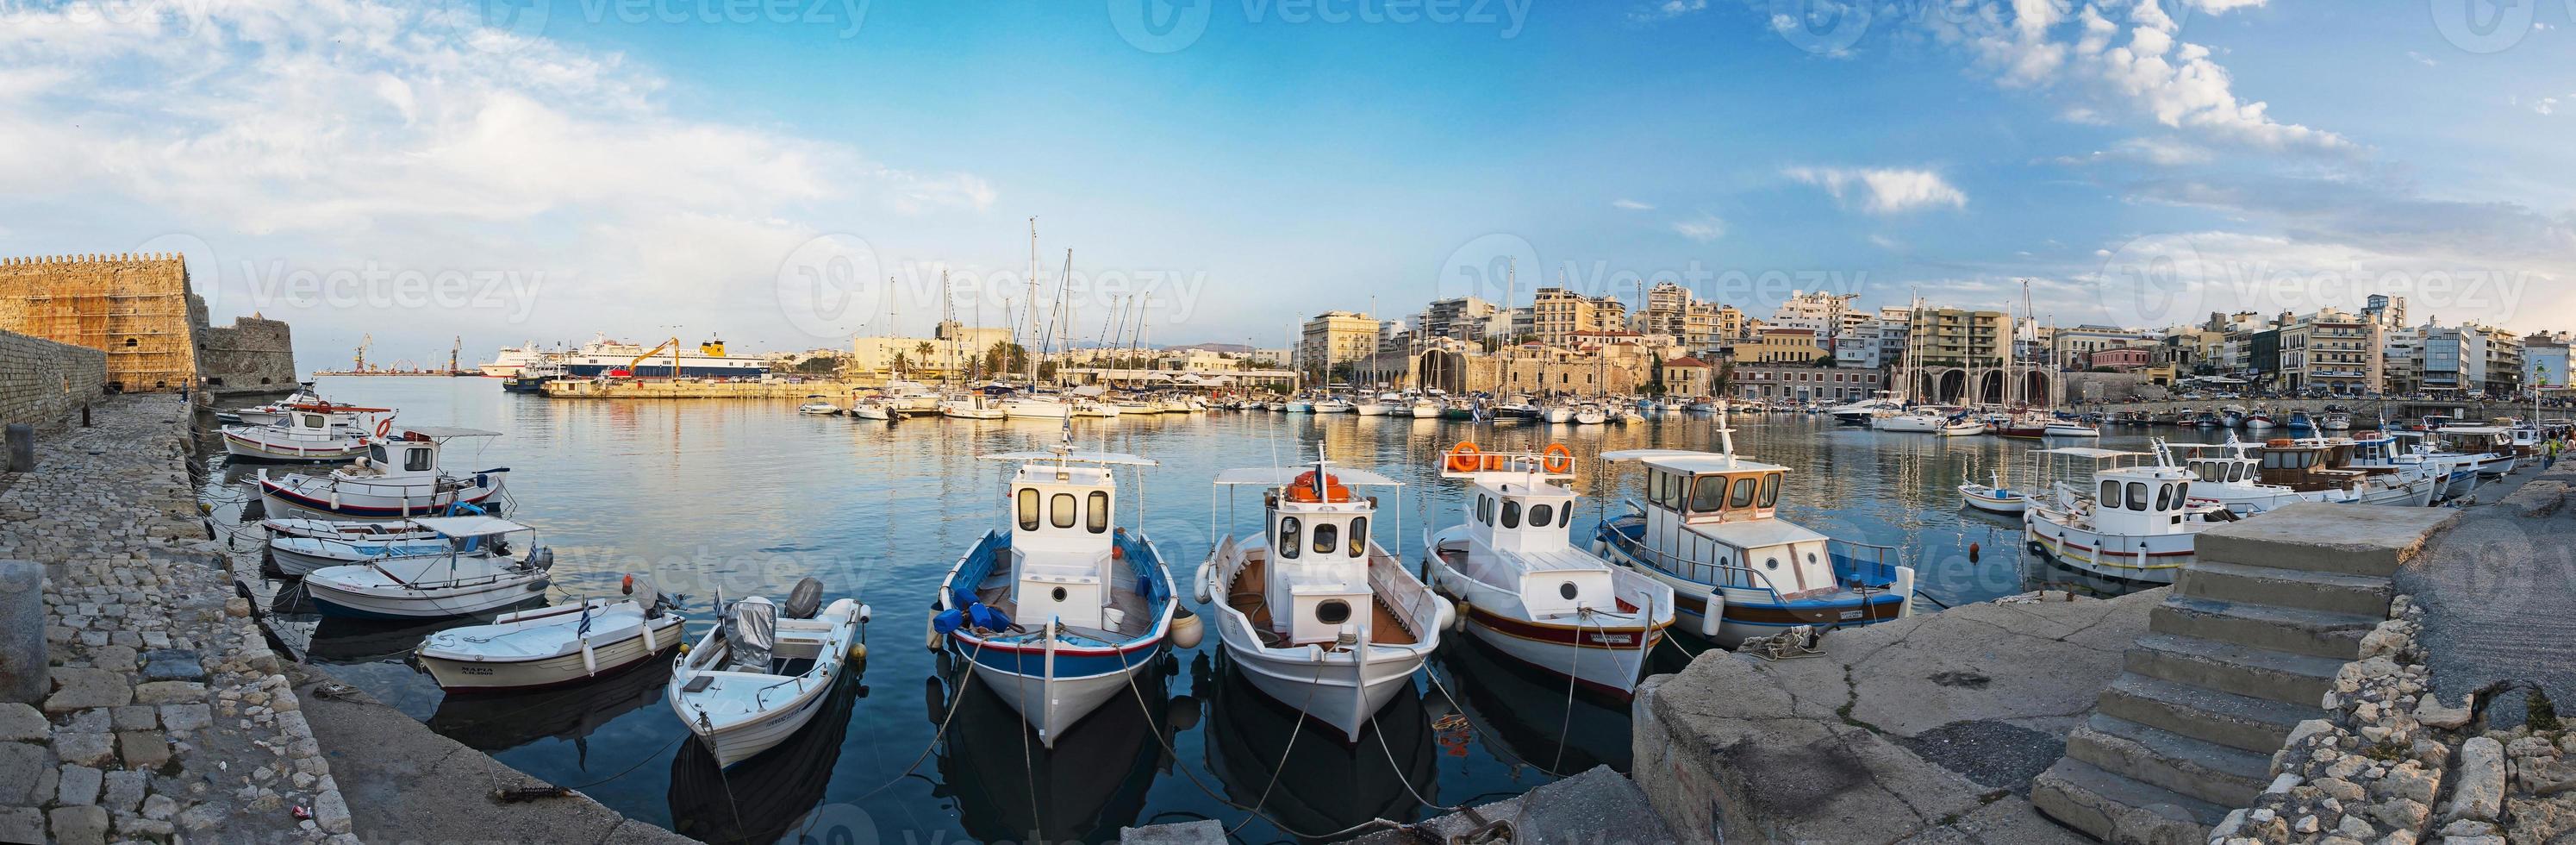 panorama van de haven in heraklion, kreta, griekenland foto